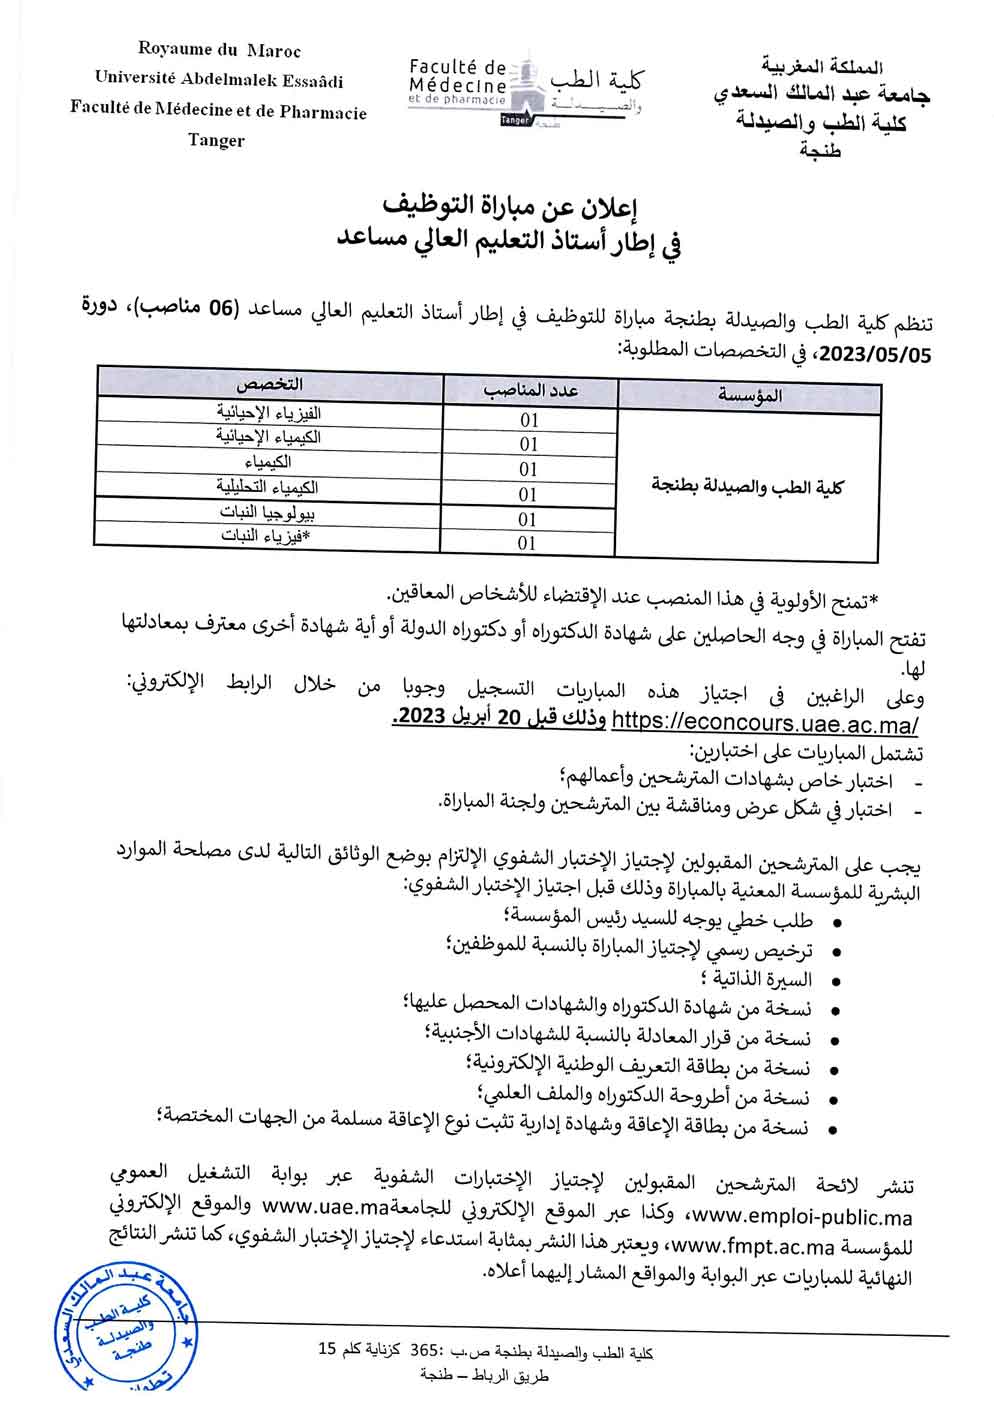 مباراة توظيف أساتذة التعليم العالي مساعدين بجامعة عبد المالك السعدي